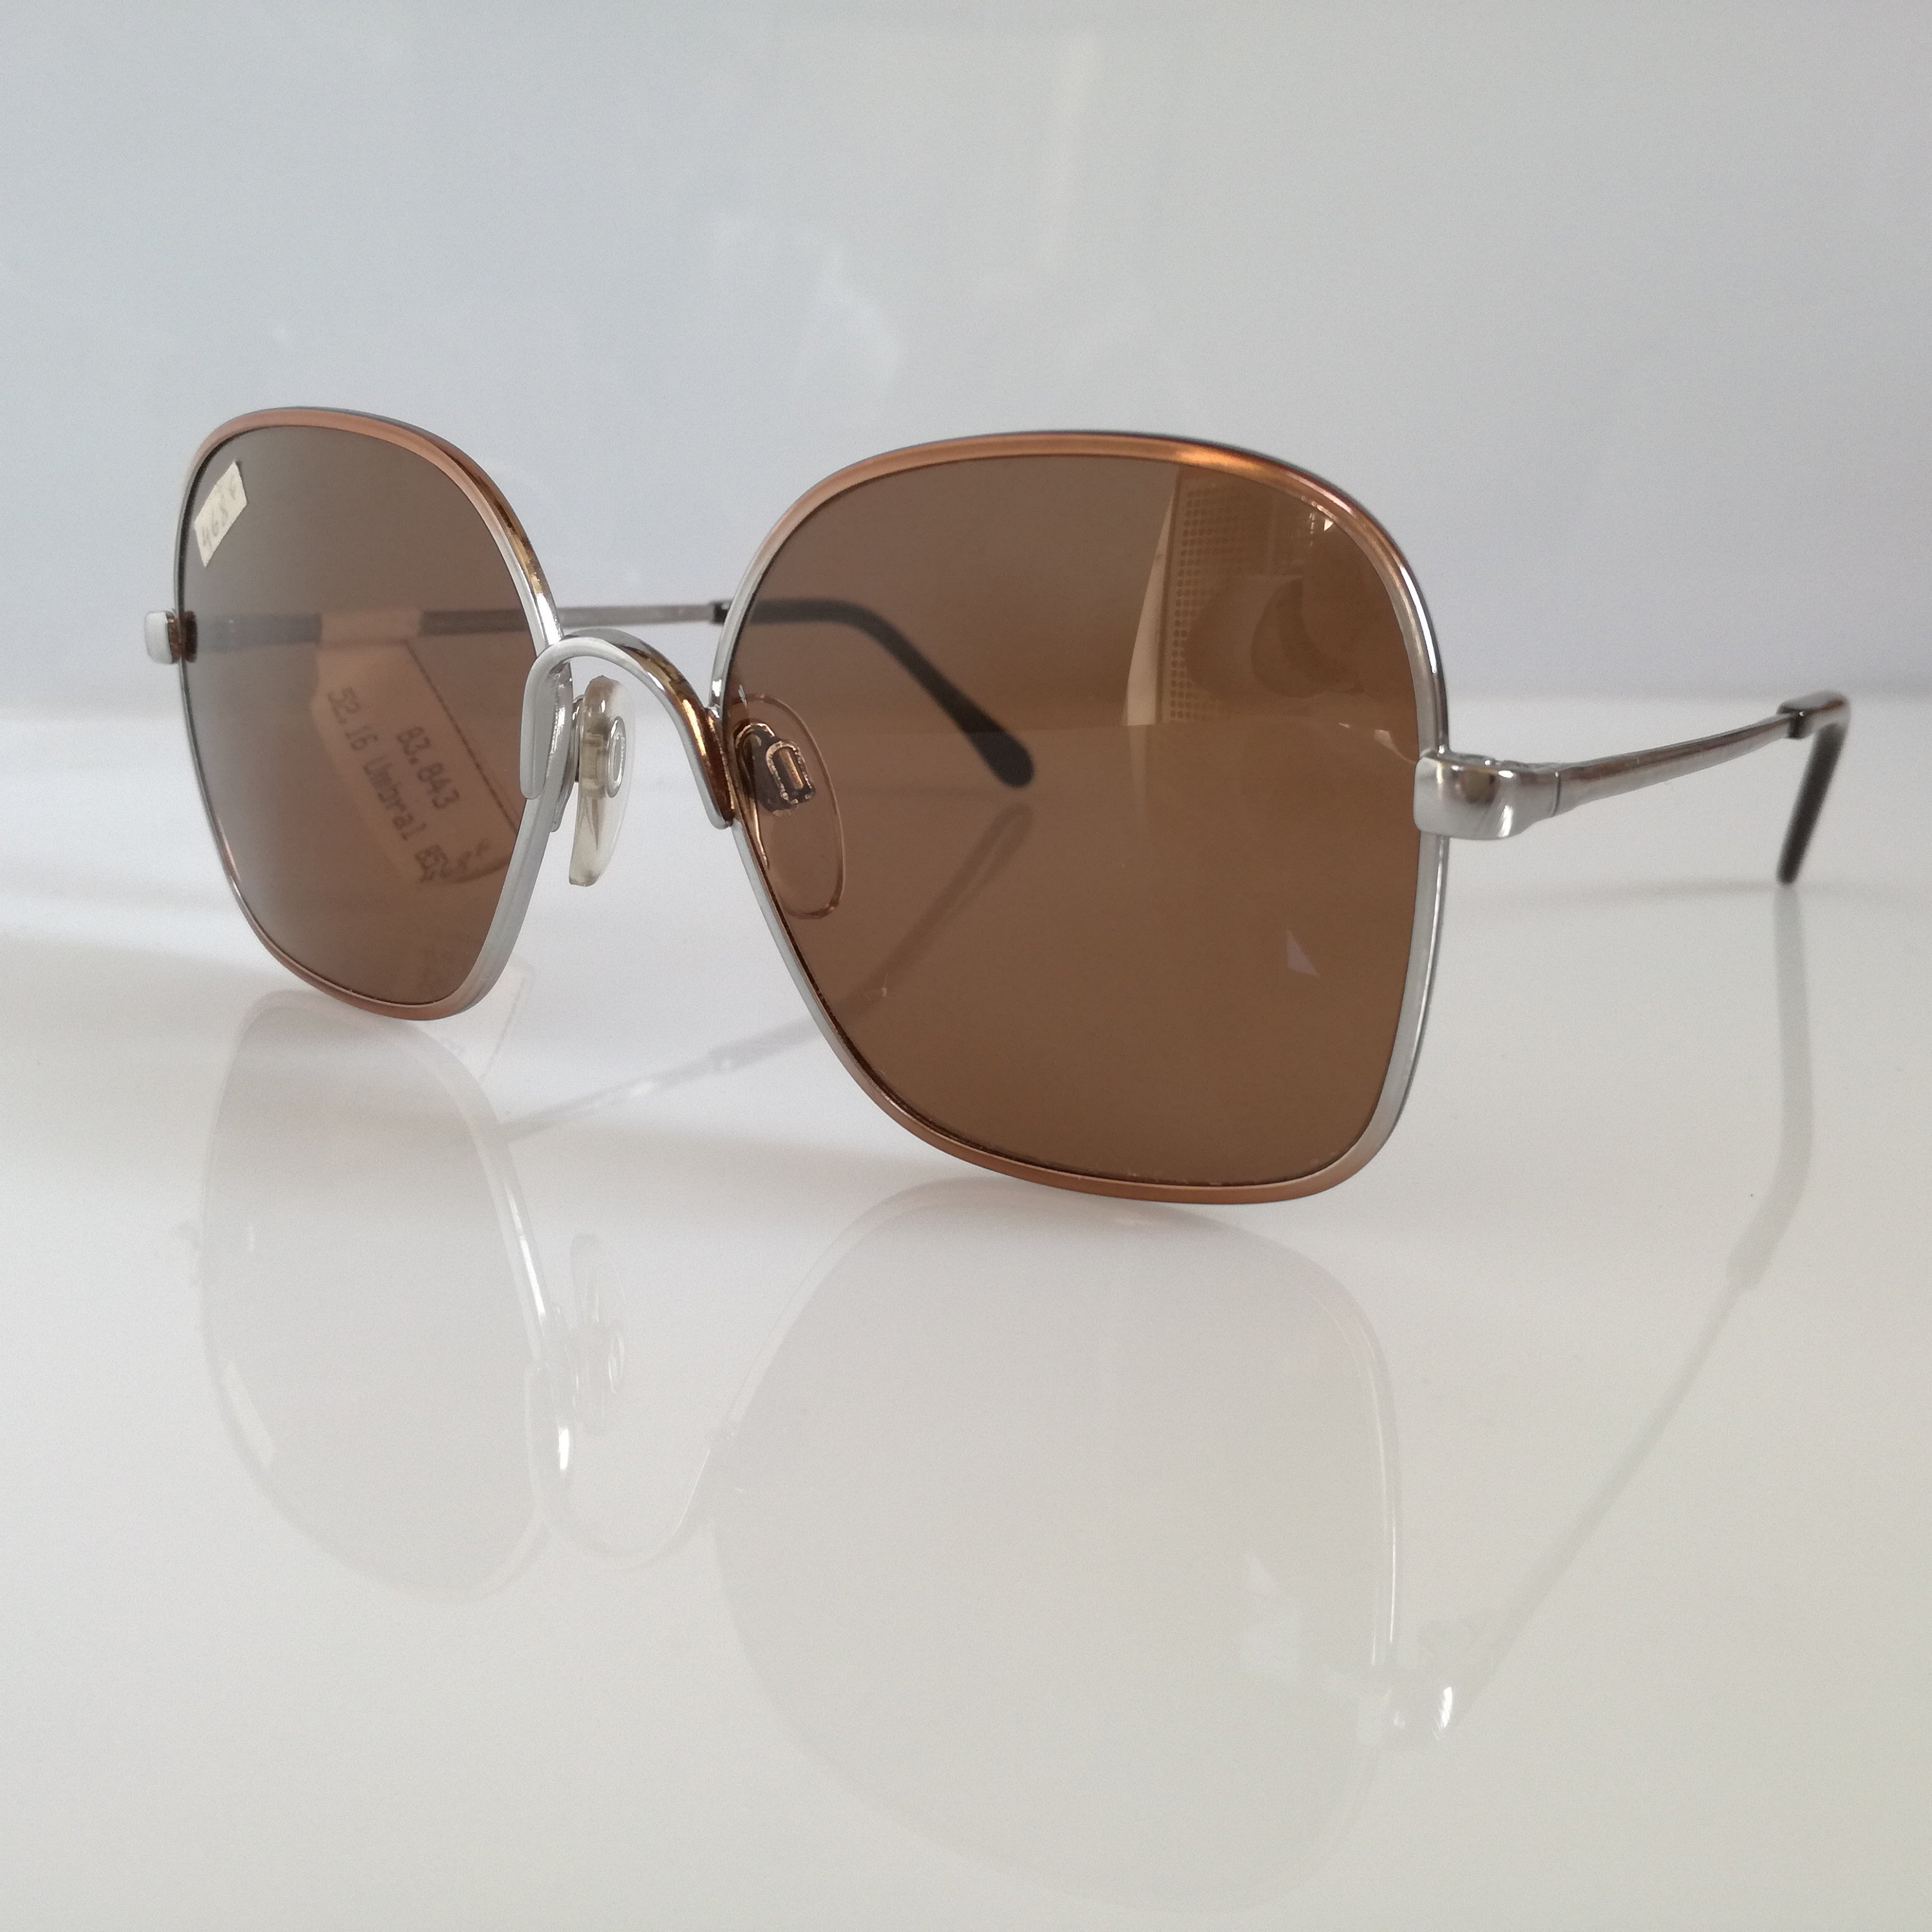 LUXOTTICA Glasses 83.843 Women's Sunglasses Dimensions | Etsy